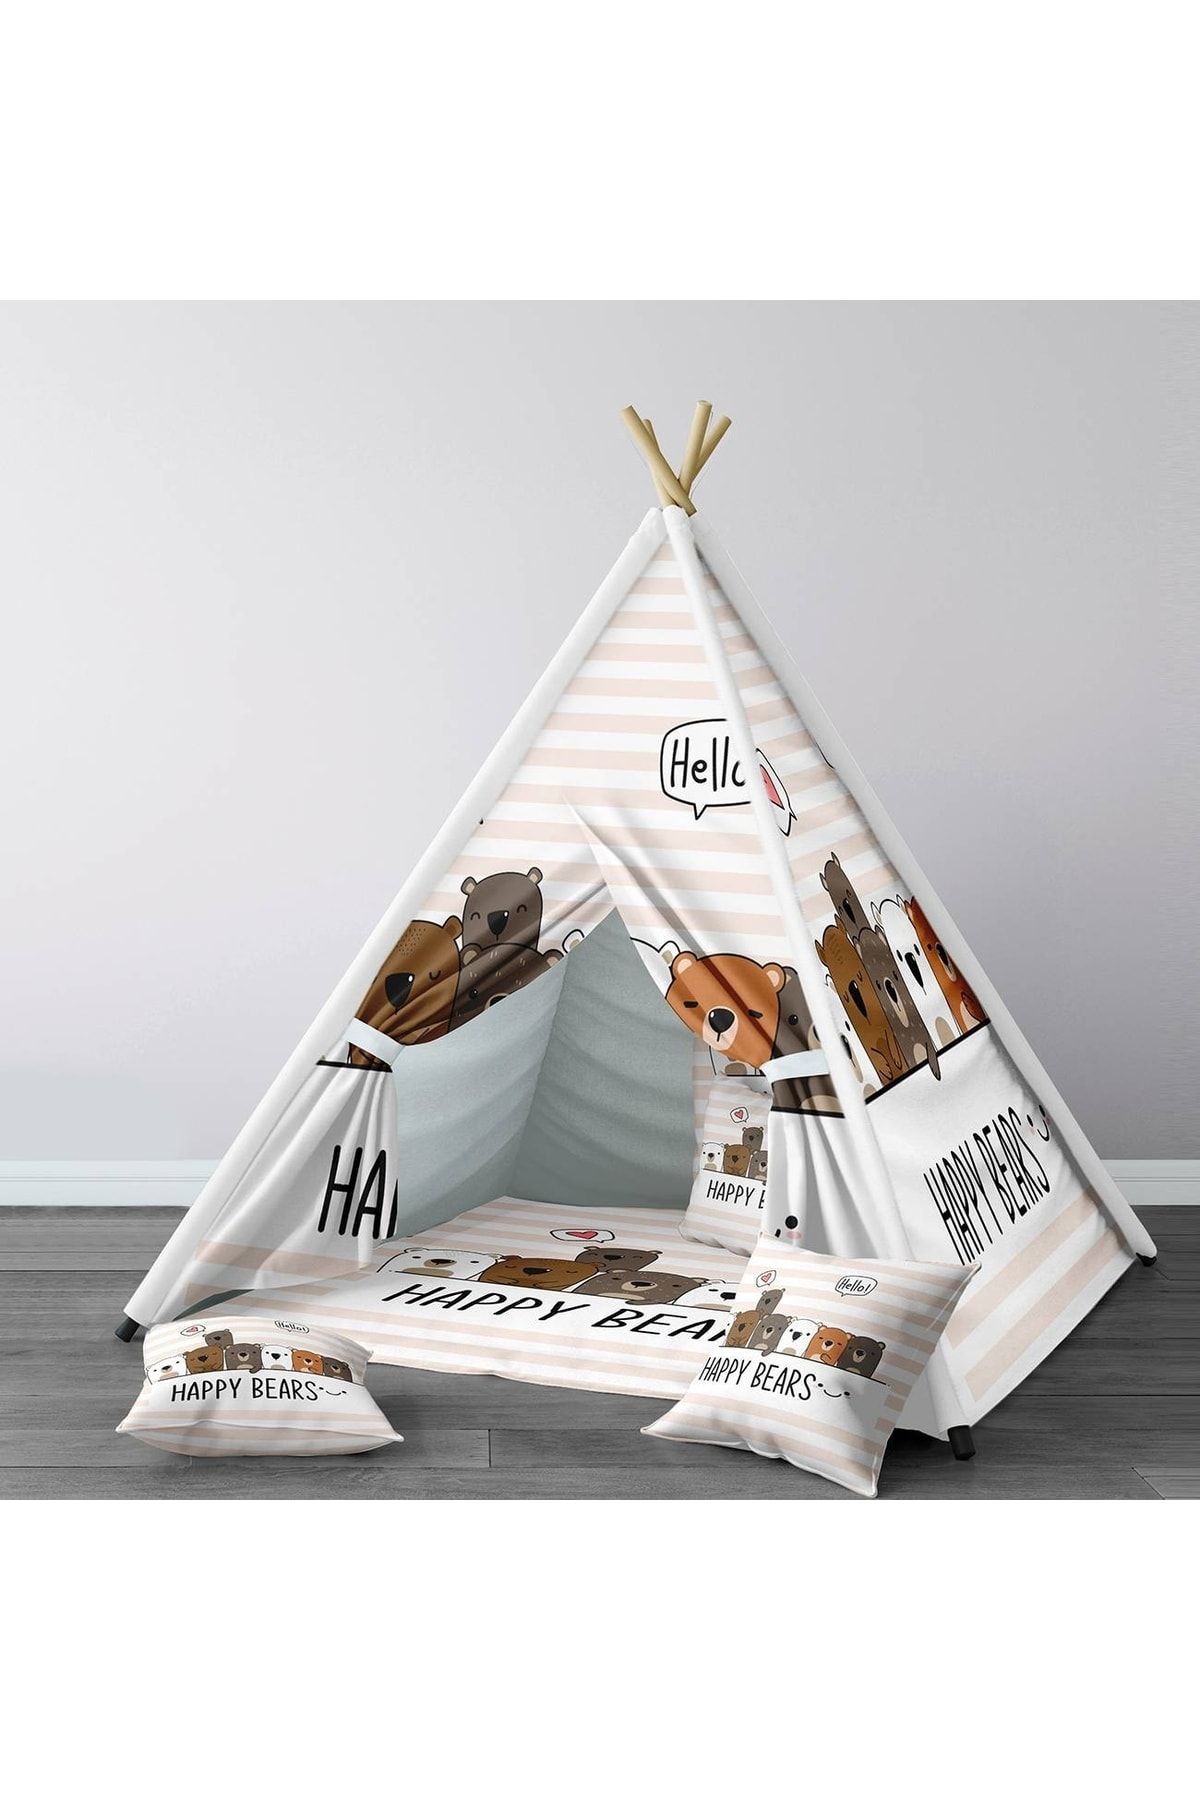 HET Concept Kahvrengi Bebek, Çocuk Odası Minderli/mindersiz Oyun Evi, Çadırı Model 0009